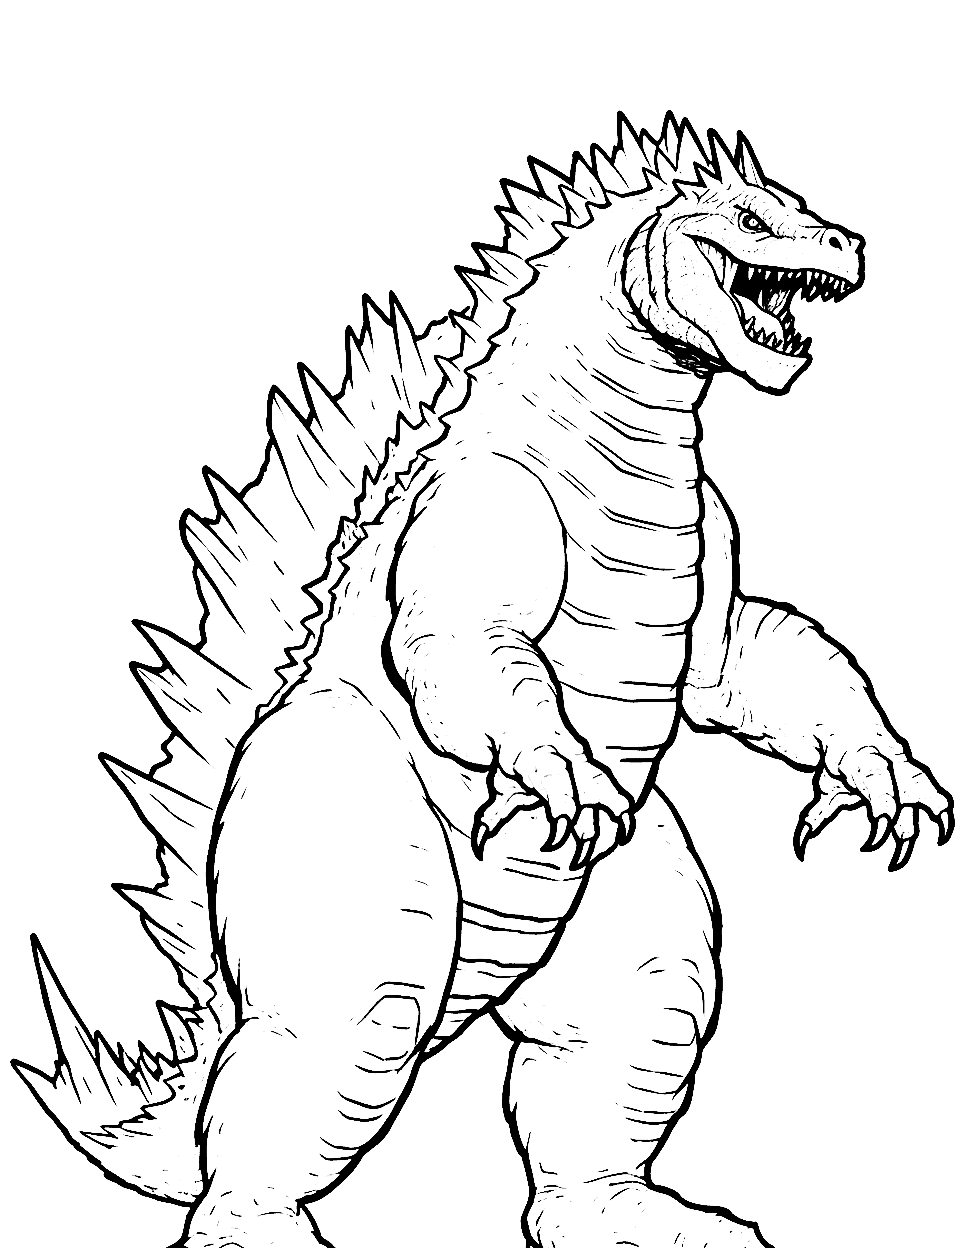 Godzilla 2014 Pose Coloring Page - The 2014 version of Godzilla.